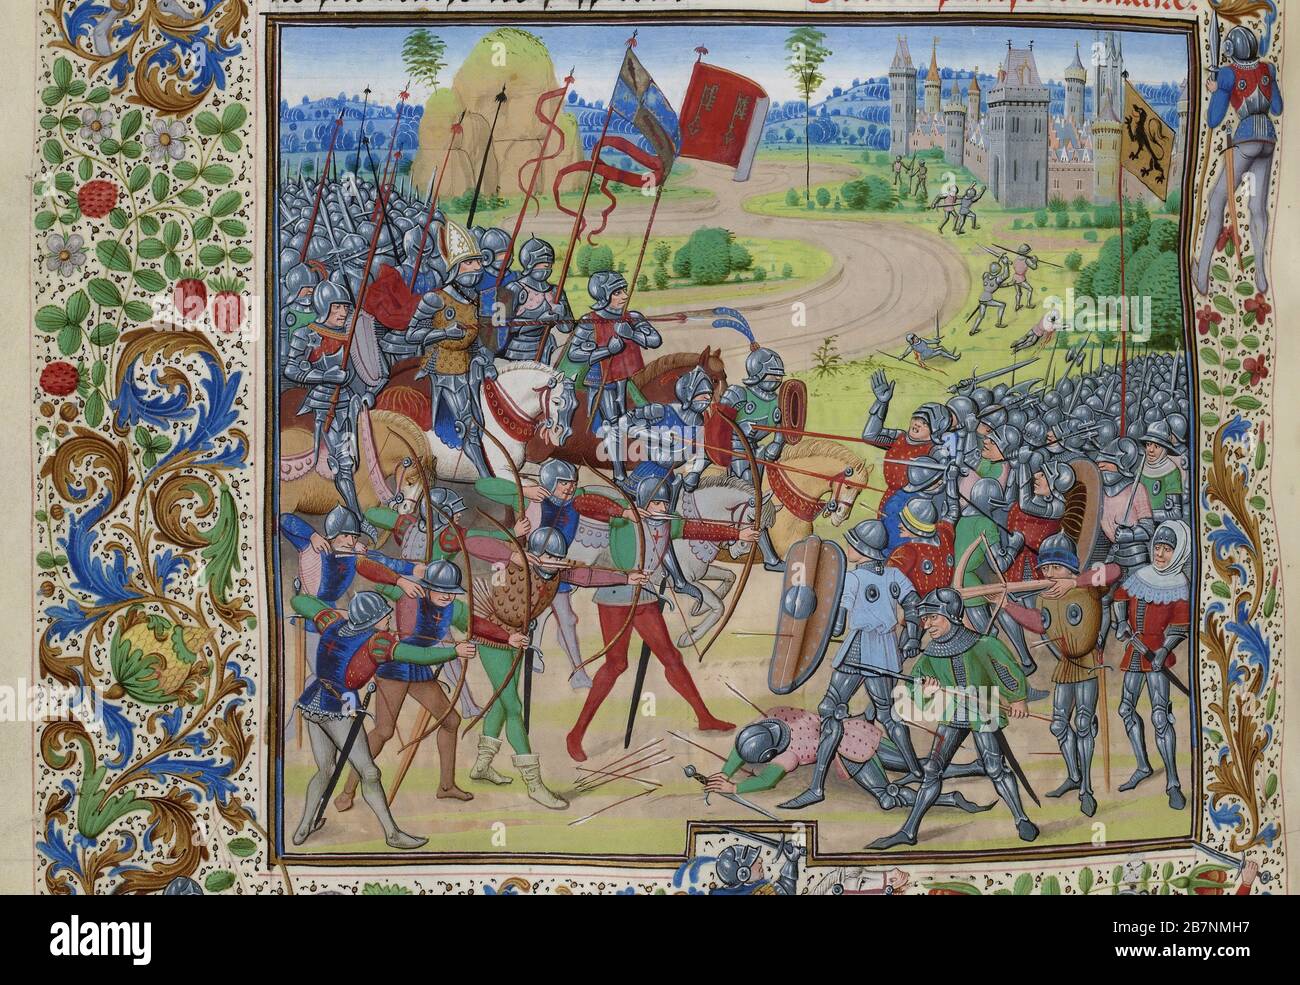 La battaglia di Dunkerque il 25 maggio 1383 (miniatura delle Grandes Chroniques de France di Jean Froissart), ca 1470-1475. Trovato nella Collezione di Biblioth&.xe8;que Nationale de France. Foto Stock